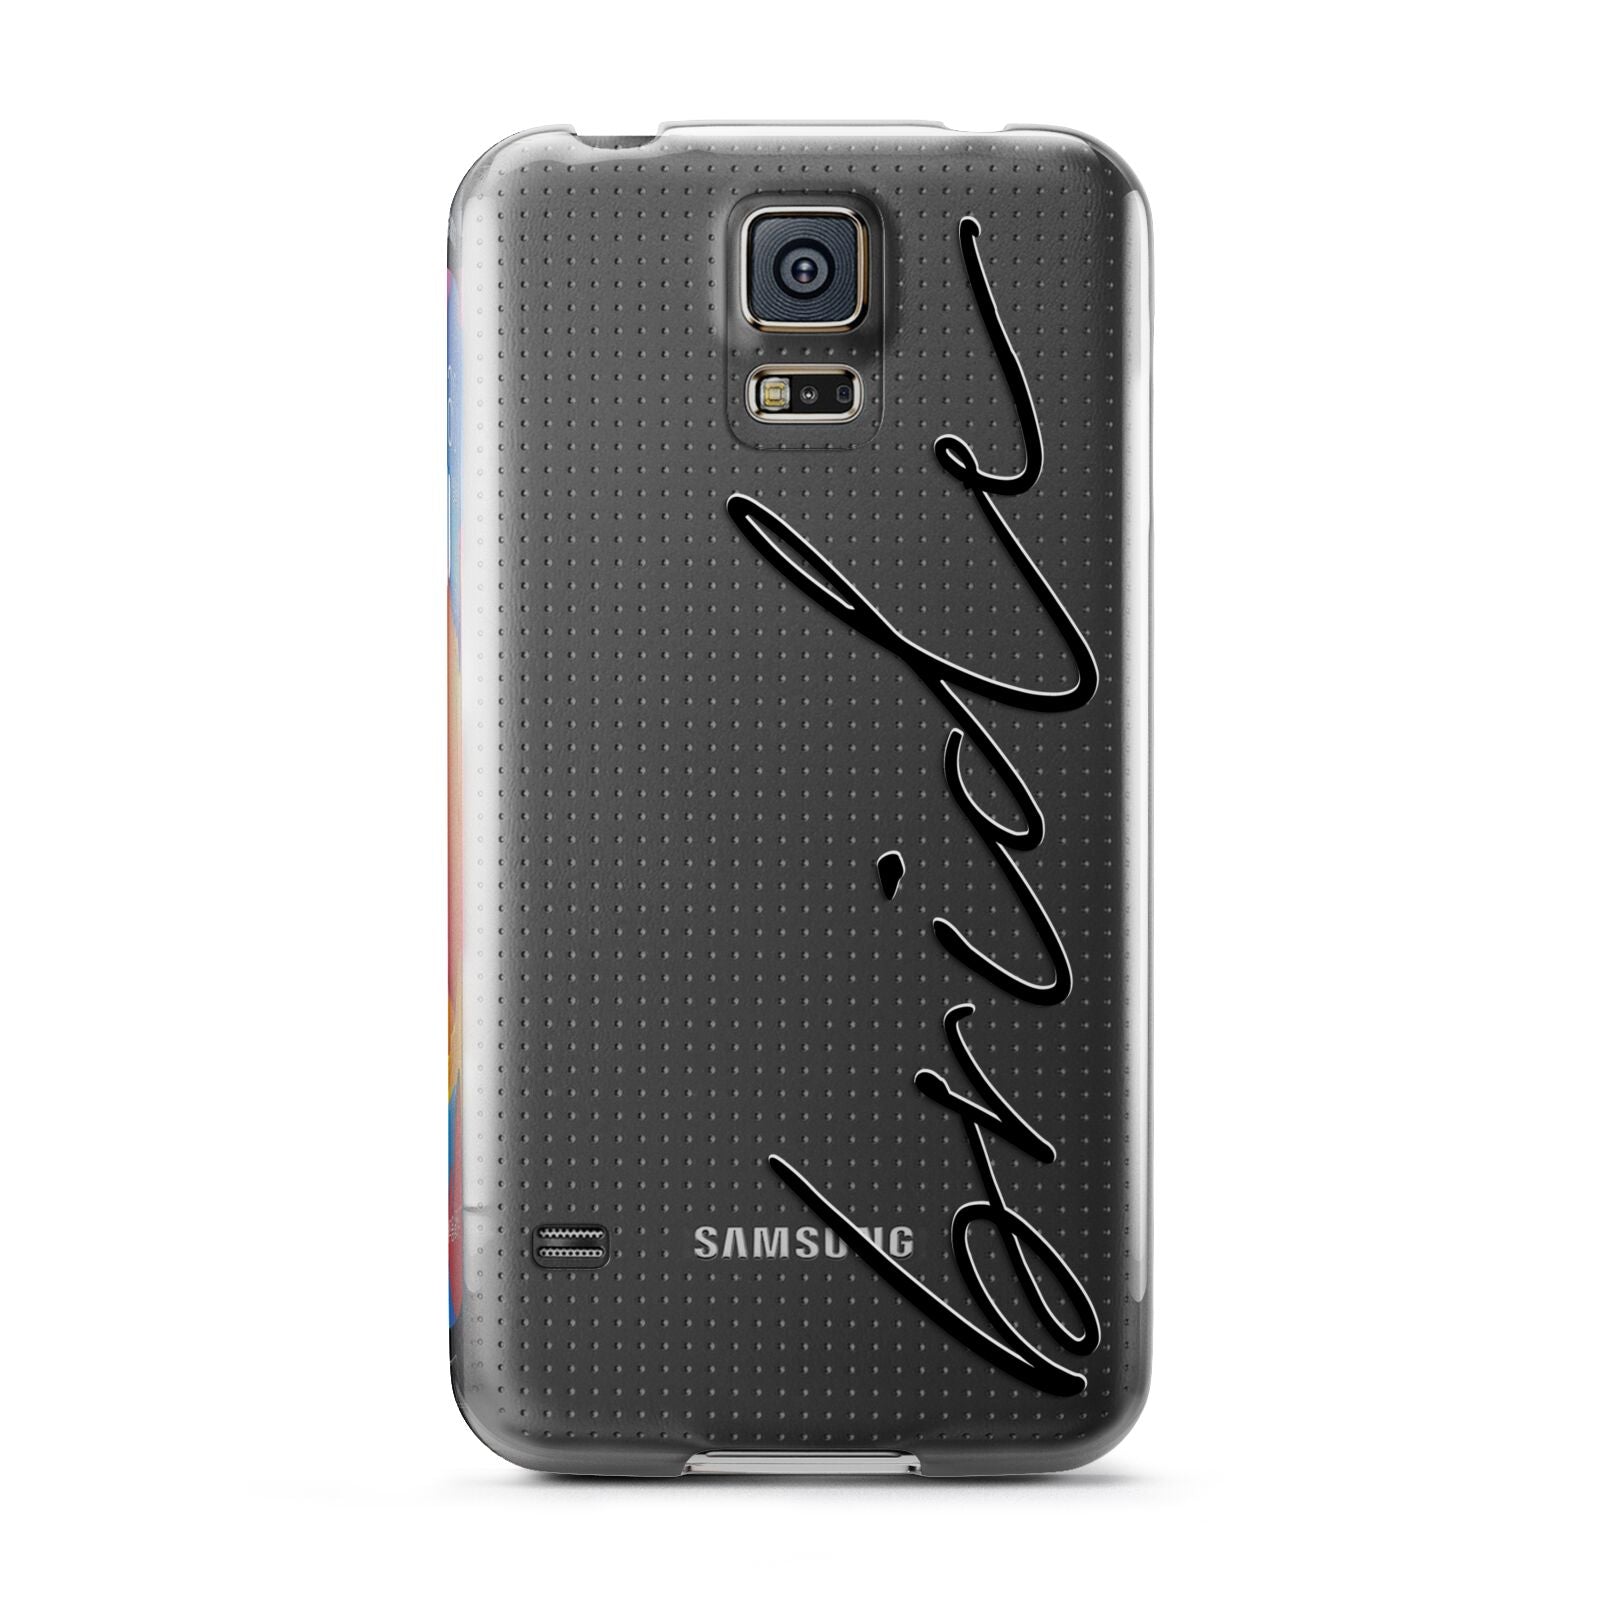 The Bride Samsung Galaxy S5 Case